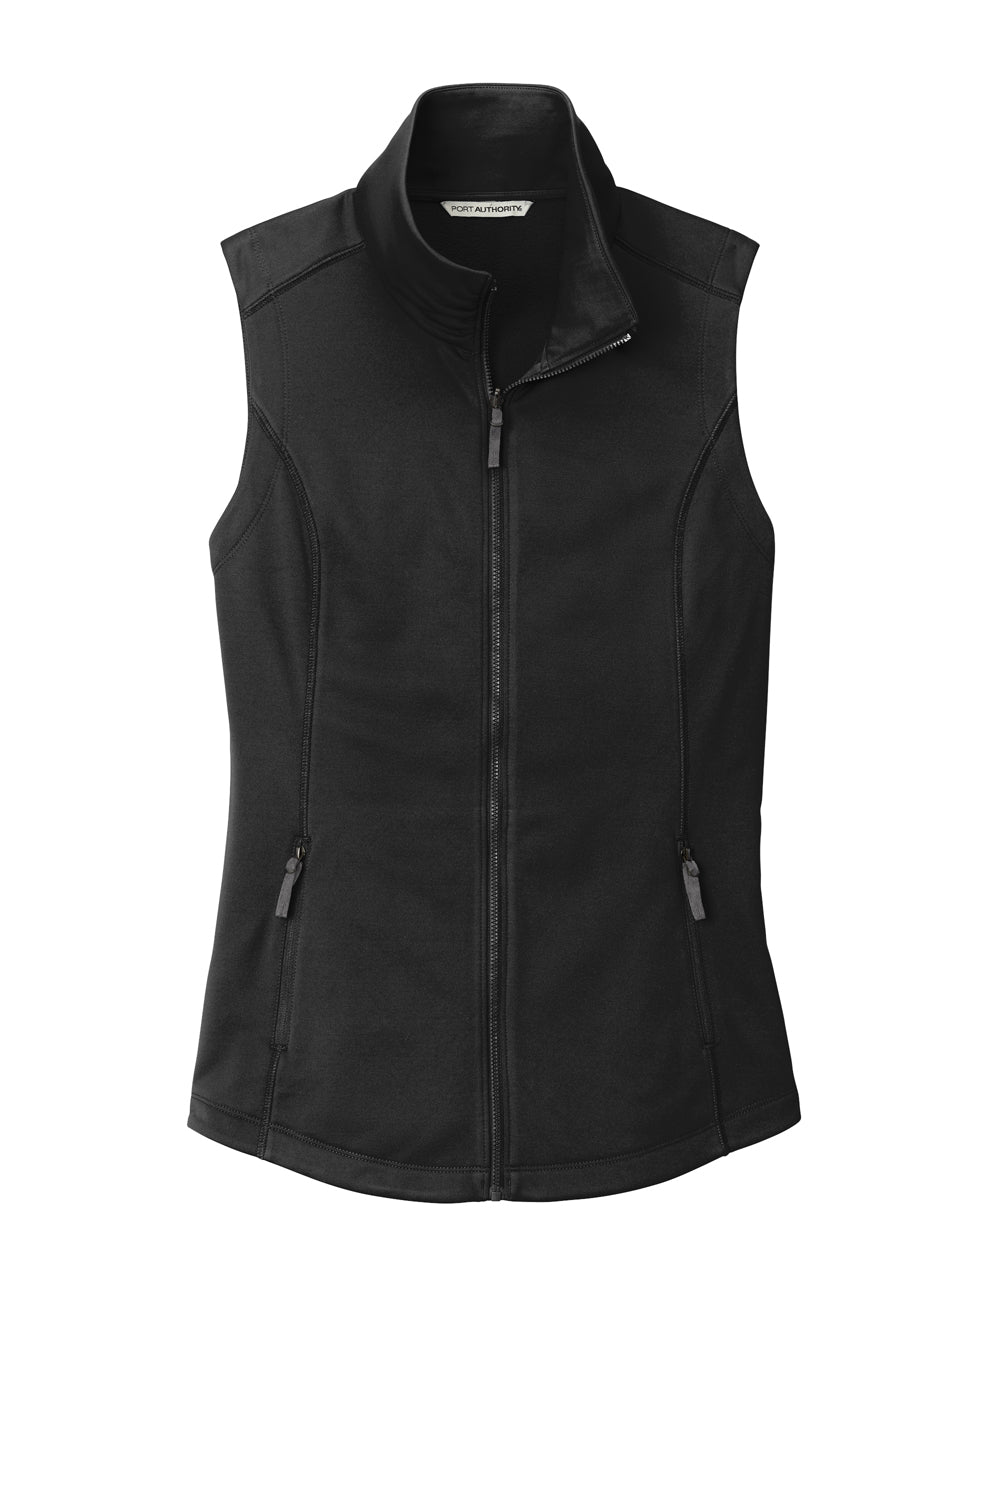 Port Authority L906 Collective Smooth Fleece Full Zip Vest Deep Black Flat Front